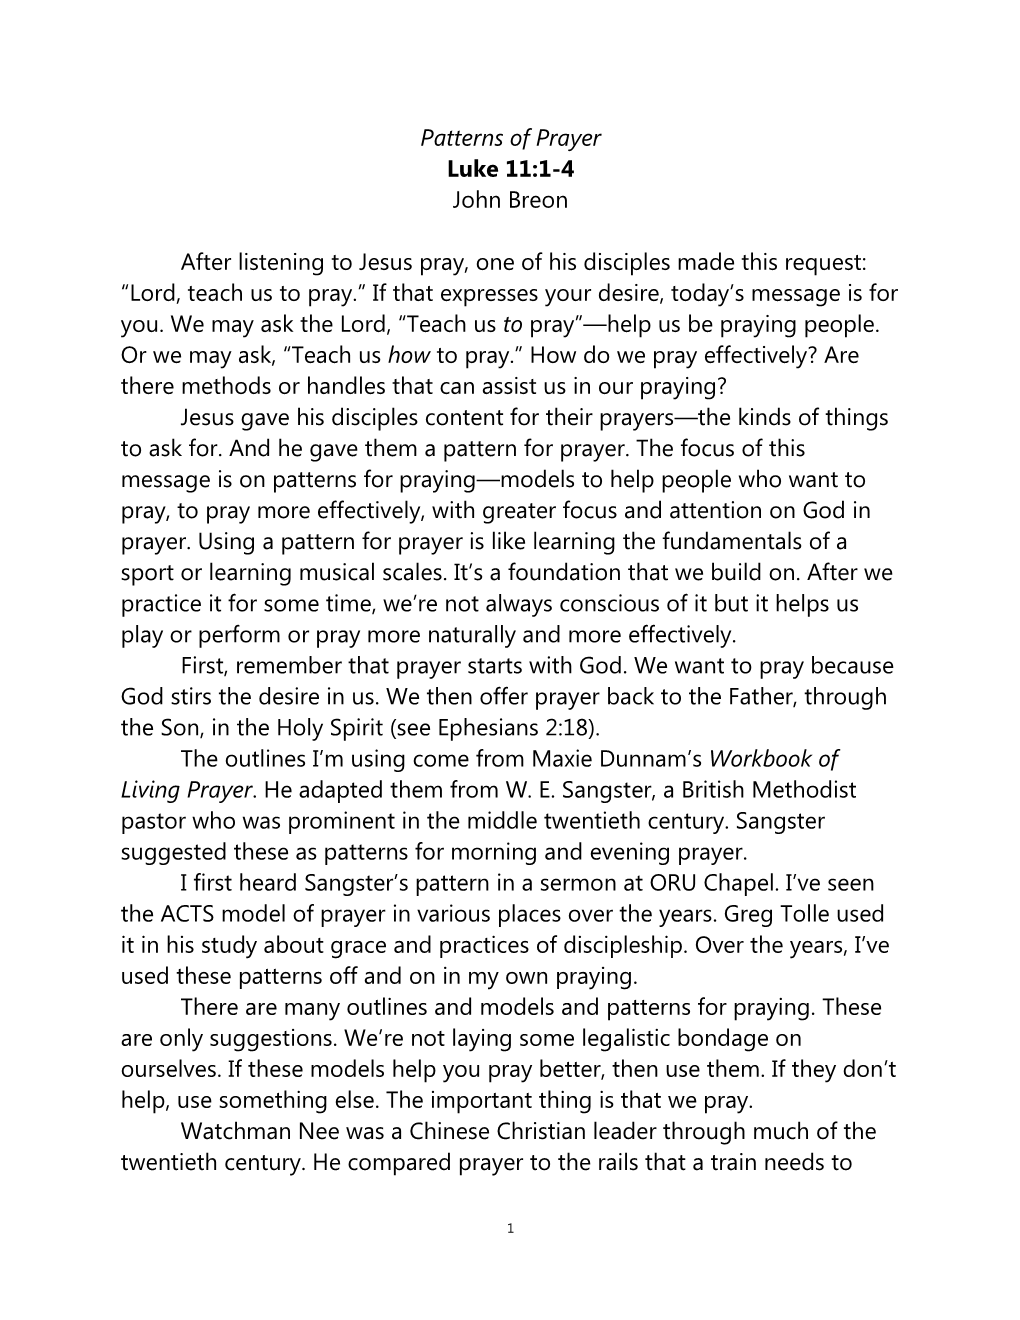 Patterns of Prayer Luke 11:1-4 John Breon After Listening to Jesus Pray